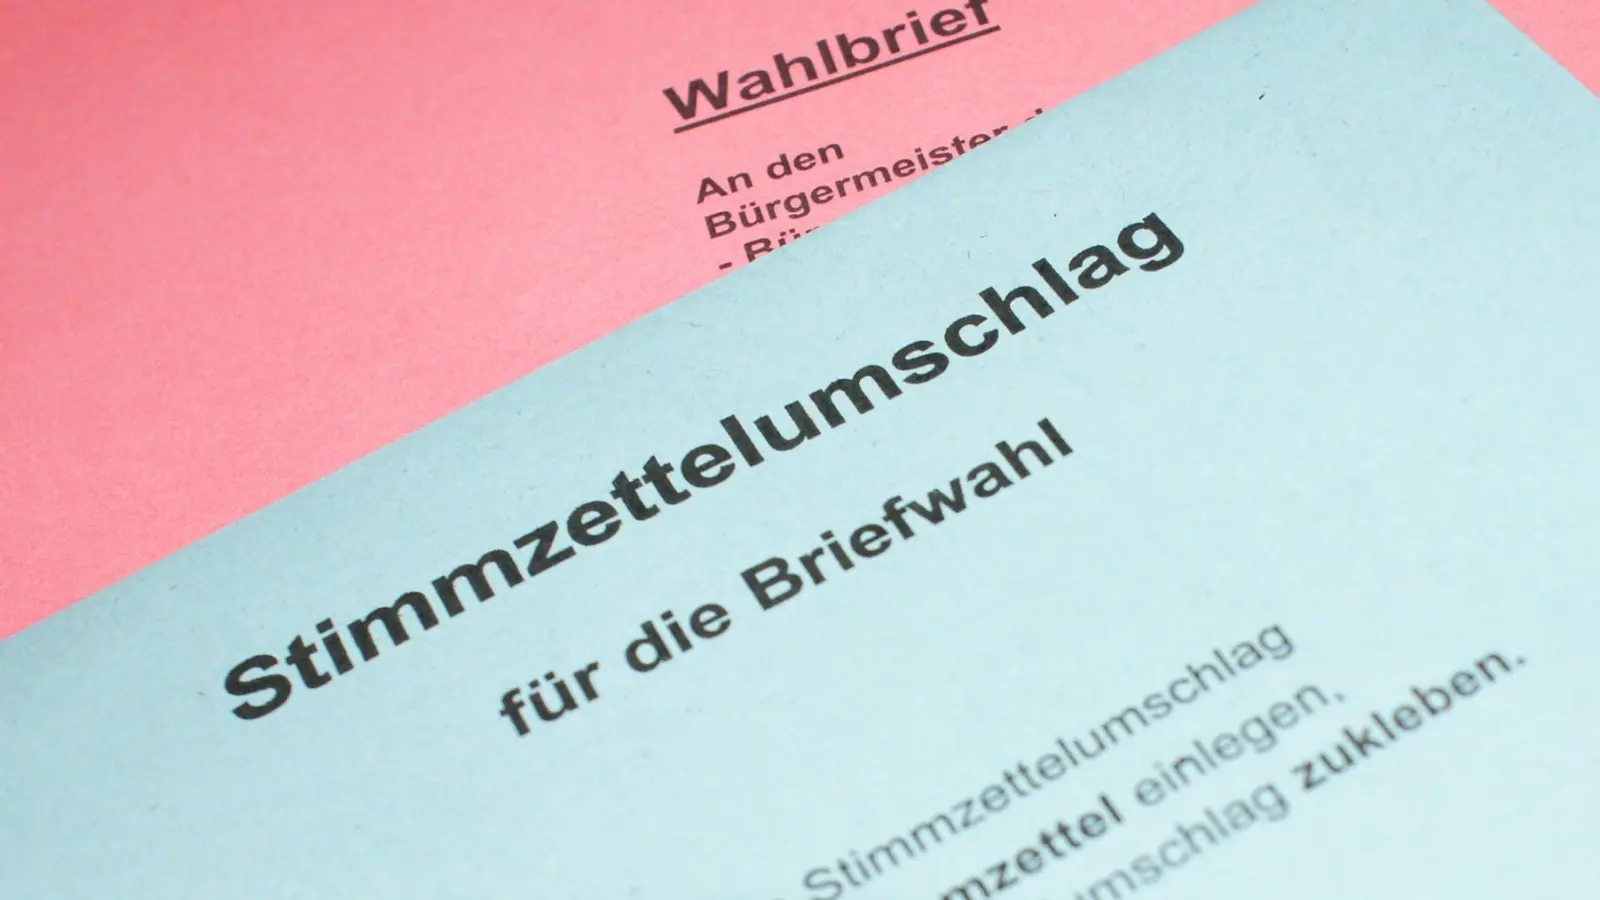 Briefwahl in Taucha ab kommenden Mittwoch möglich (Foto: taucha-kompakt.de)